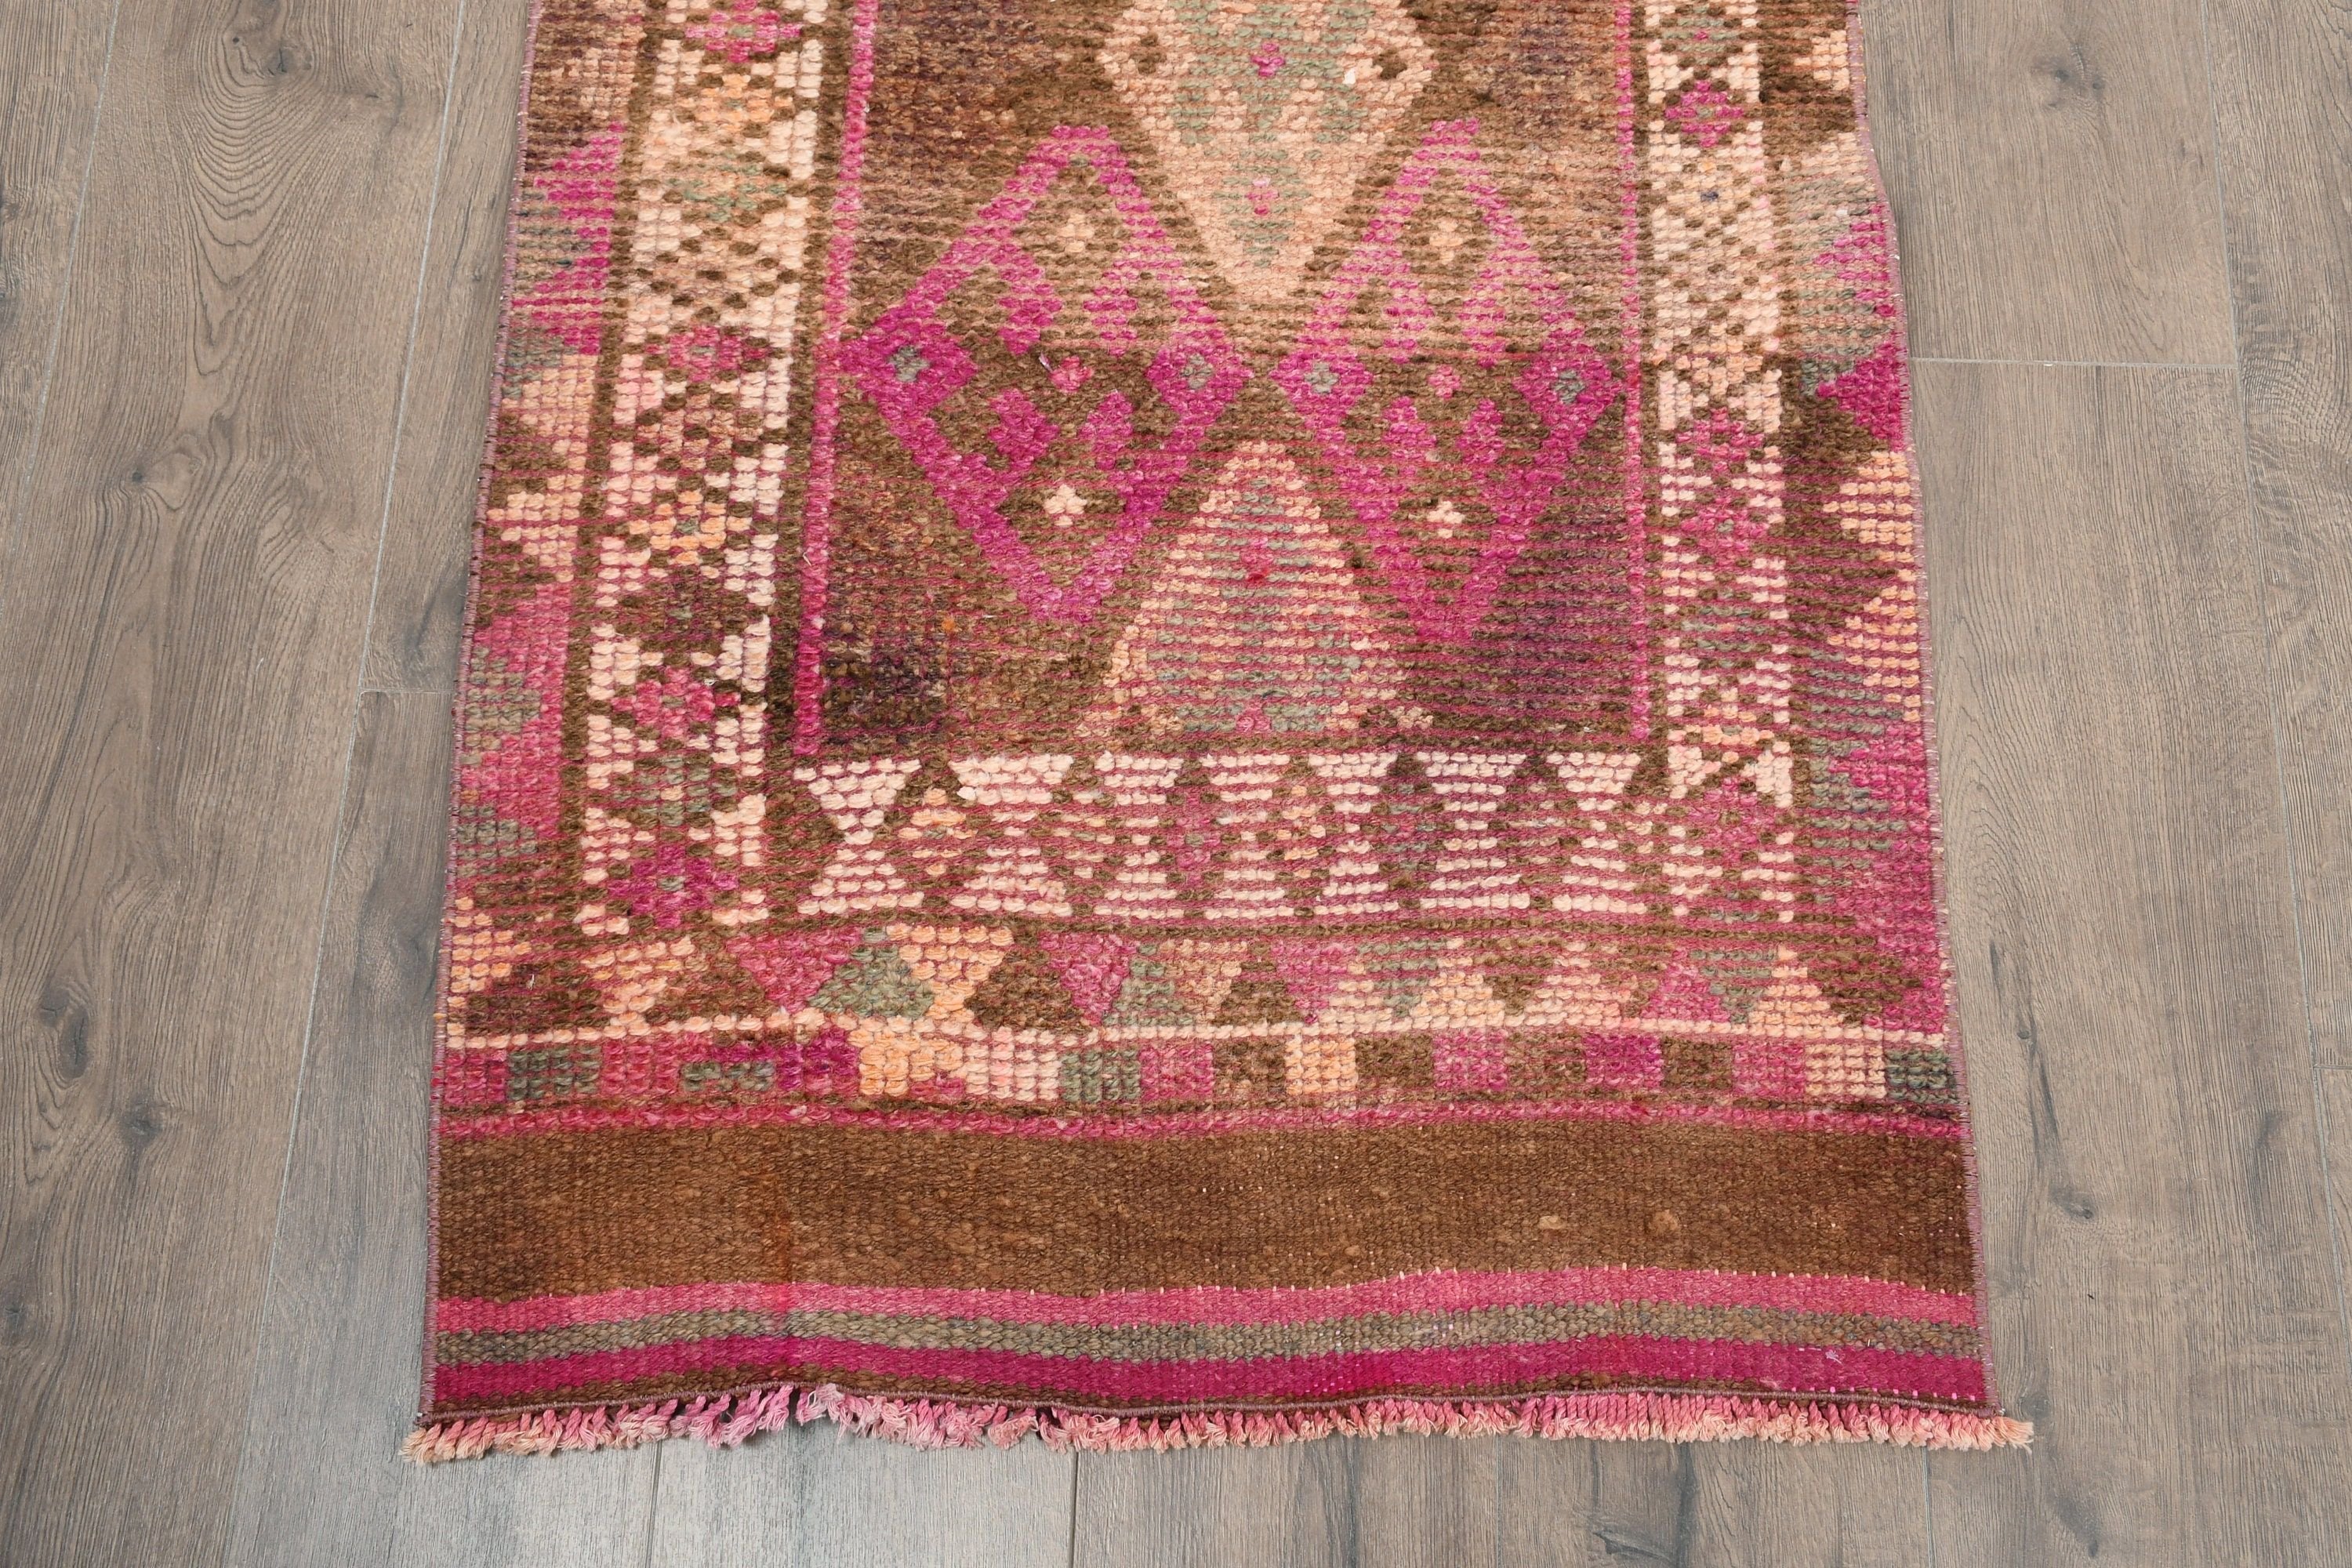 Pink Wool Rug, Rugs for Corridor, Home Decor Rugs, 2.4x11.7 ft Runner Rug, Hallway Rugs, Cool Rug, Turkish Rug, Vintage Rugs, Stair Rug